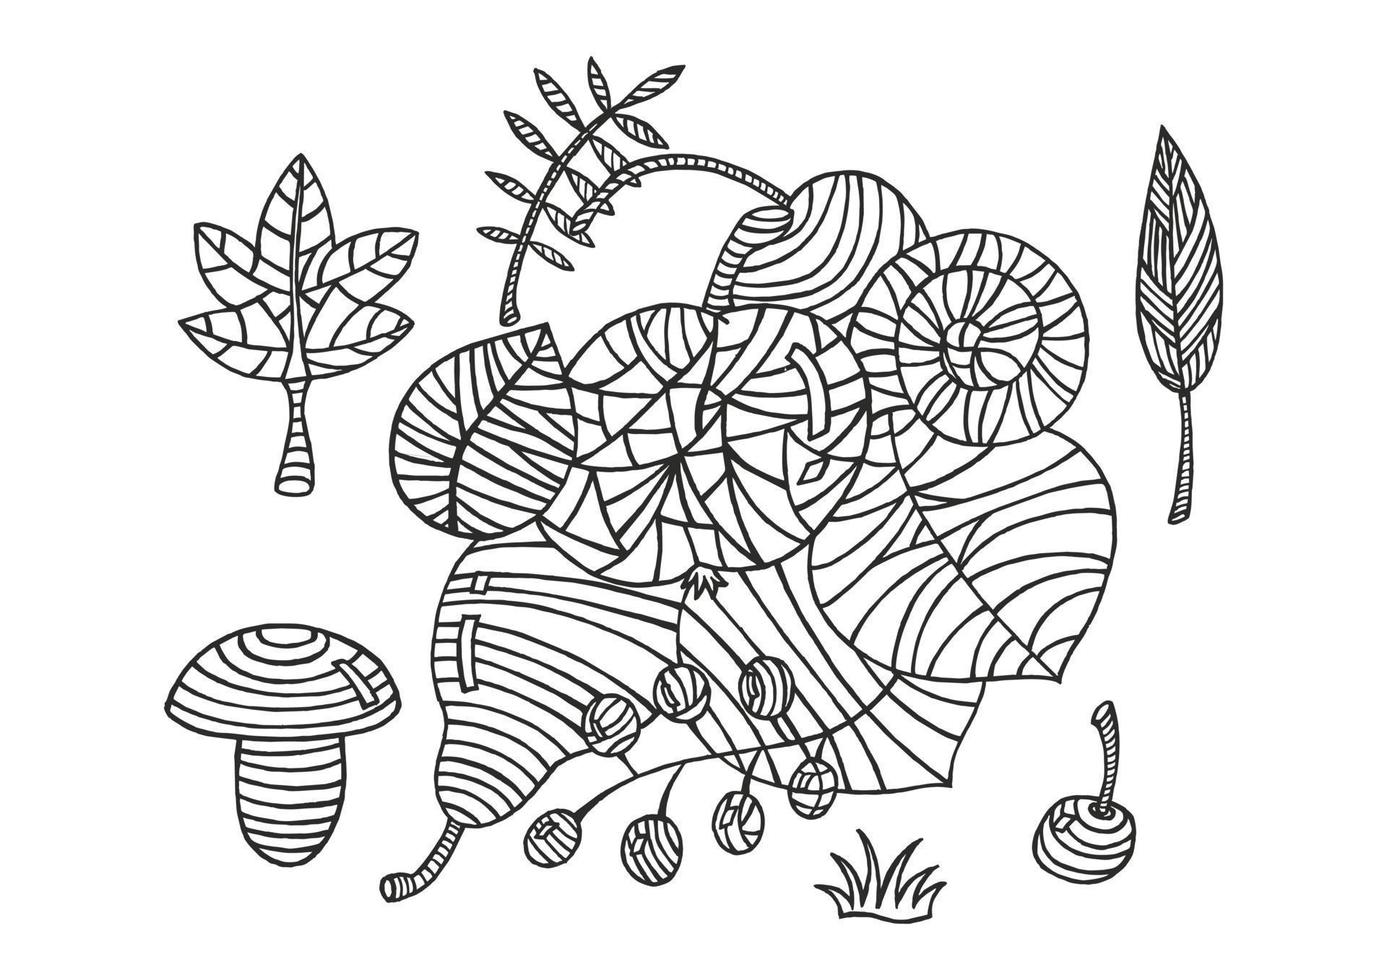 rabisco de natureza com lindas bagas, folhas, maçã, cogumelo, pera na ilustração de desenho de mão branca. vetor